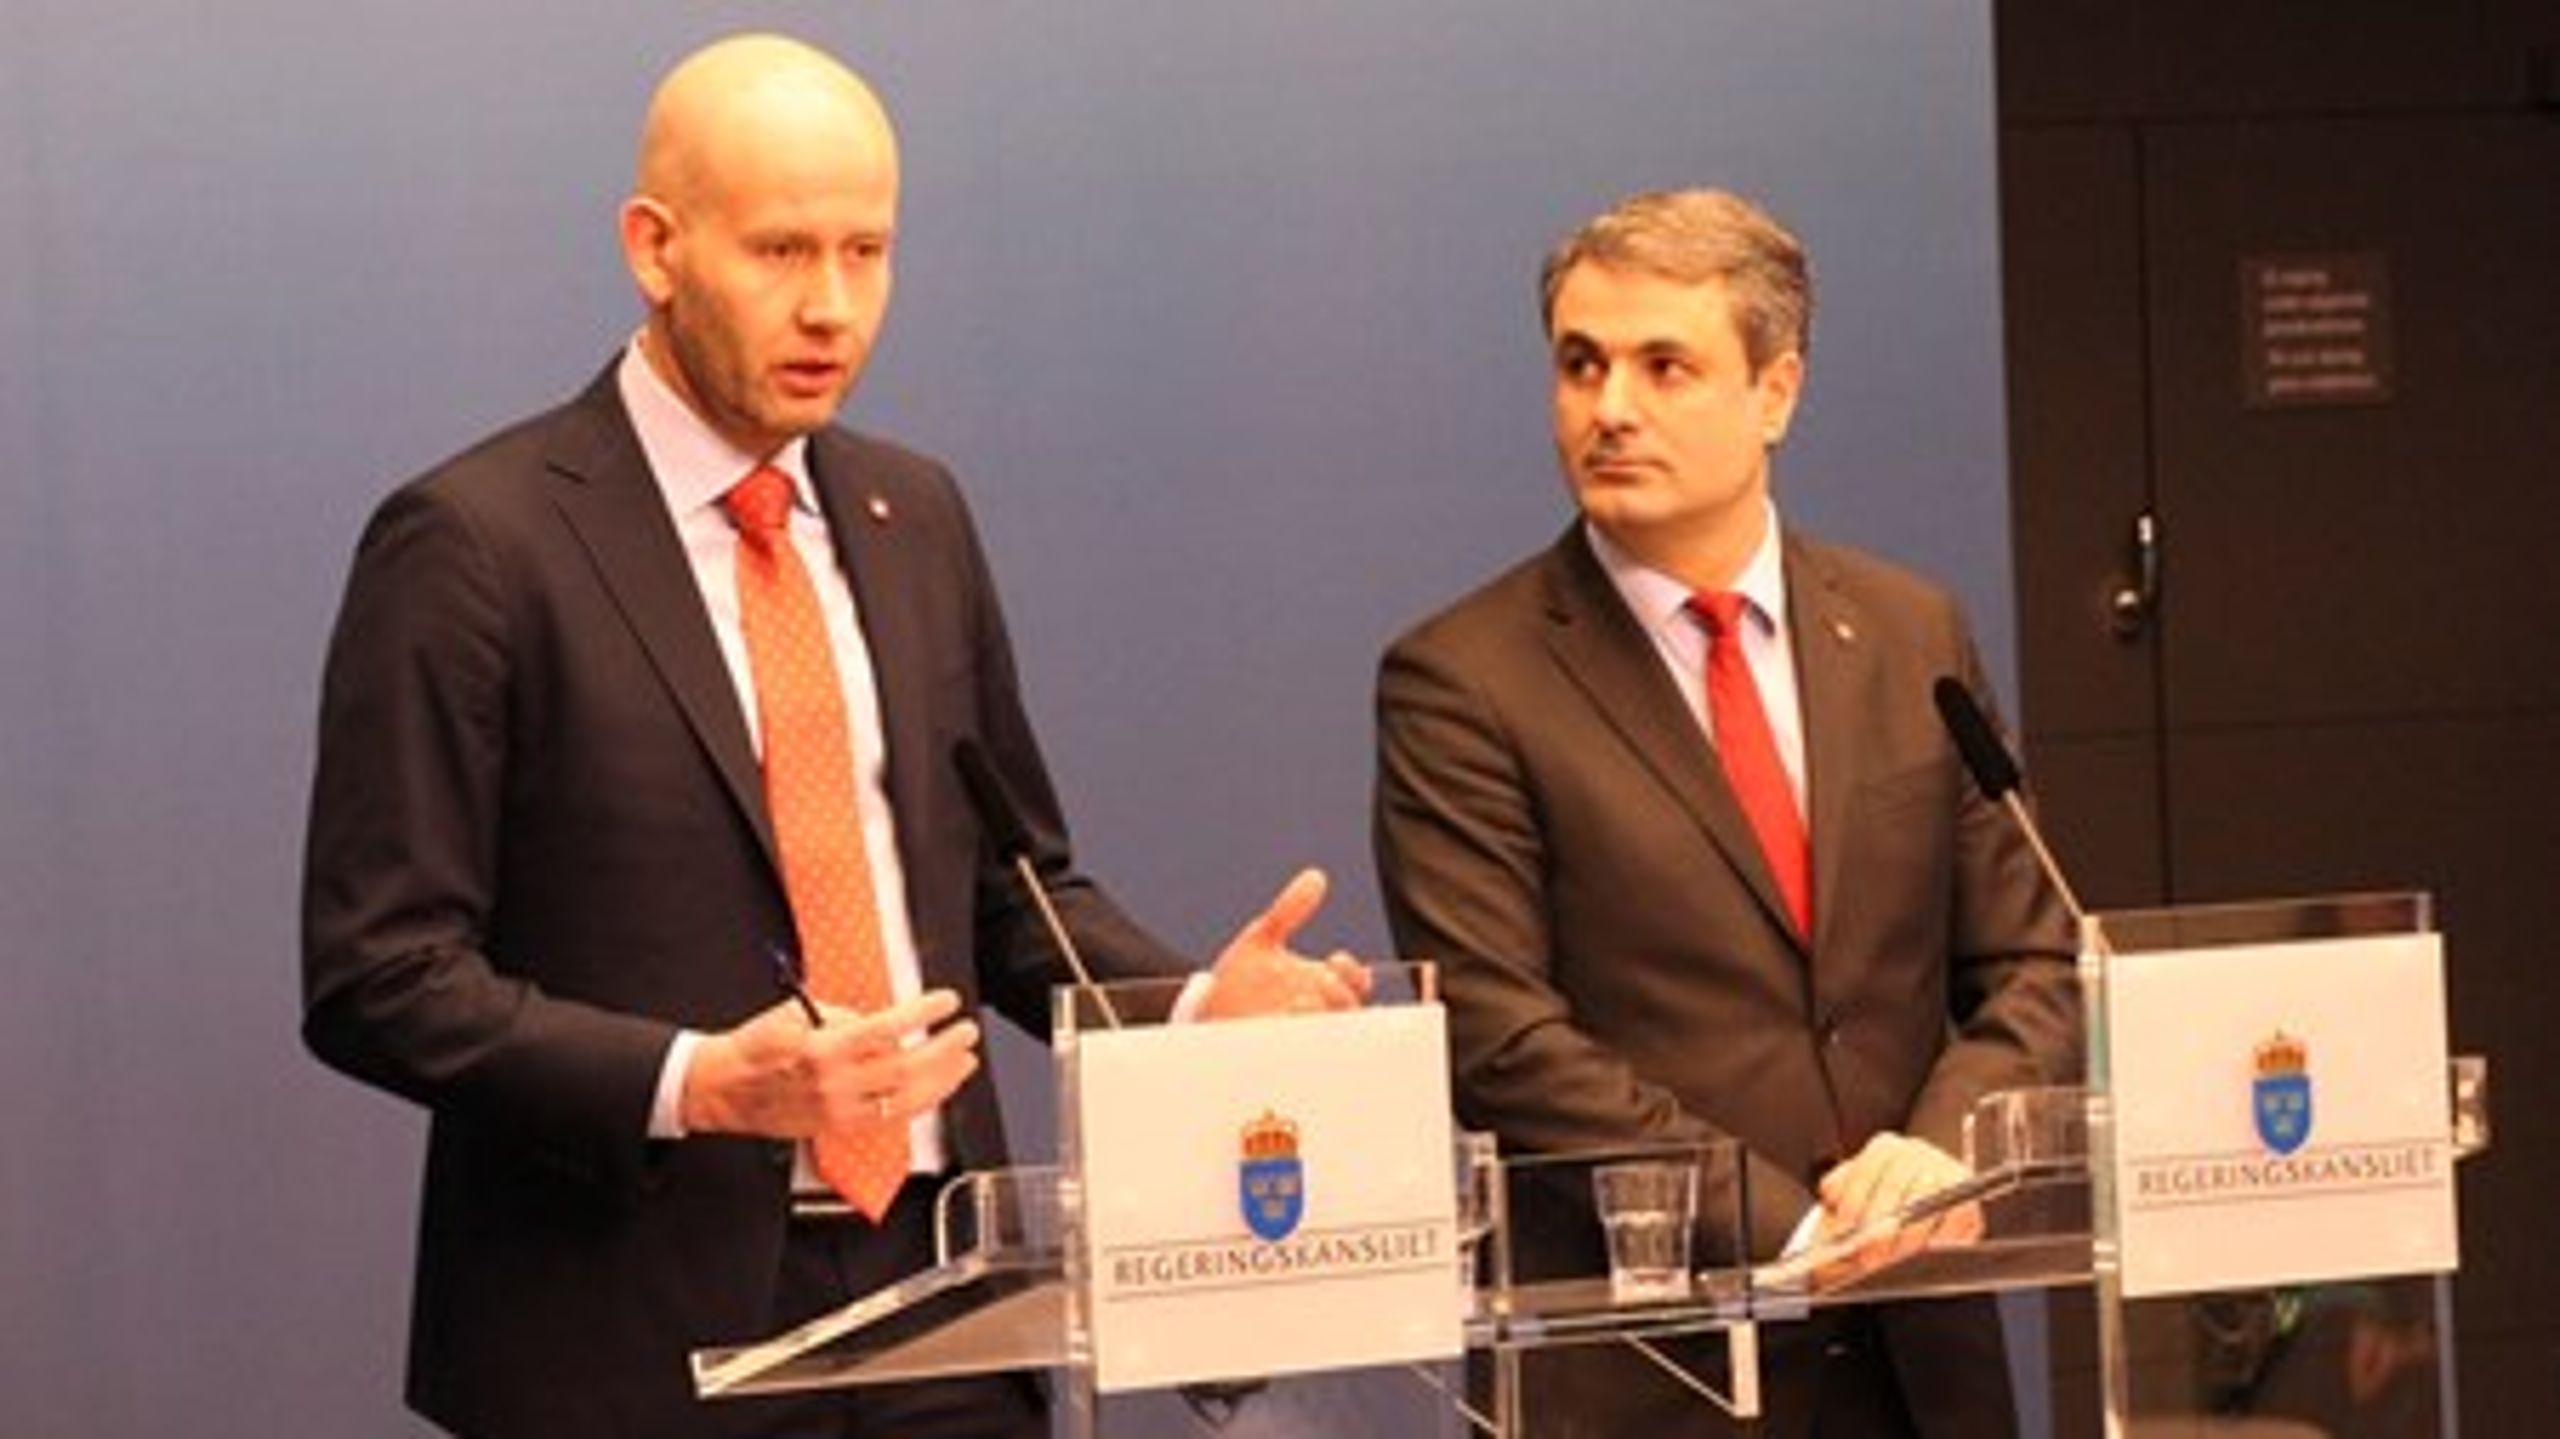 Norges olje- och energiminister Tord Lien tillsammans med energiminister Ibrahim Baylan när ändringarna i&nbsp;avtalet mellan Norge och Sverige presenterades.